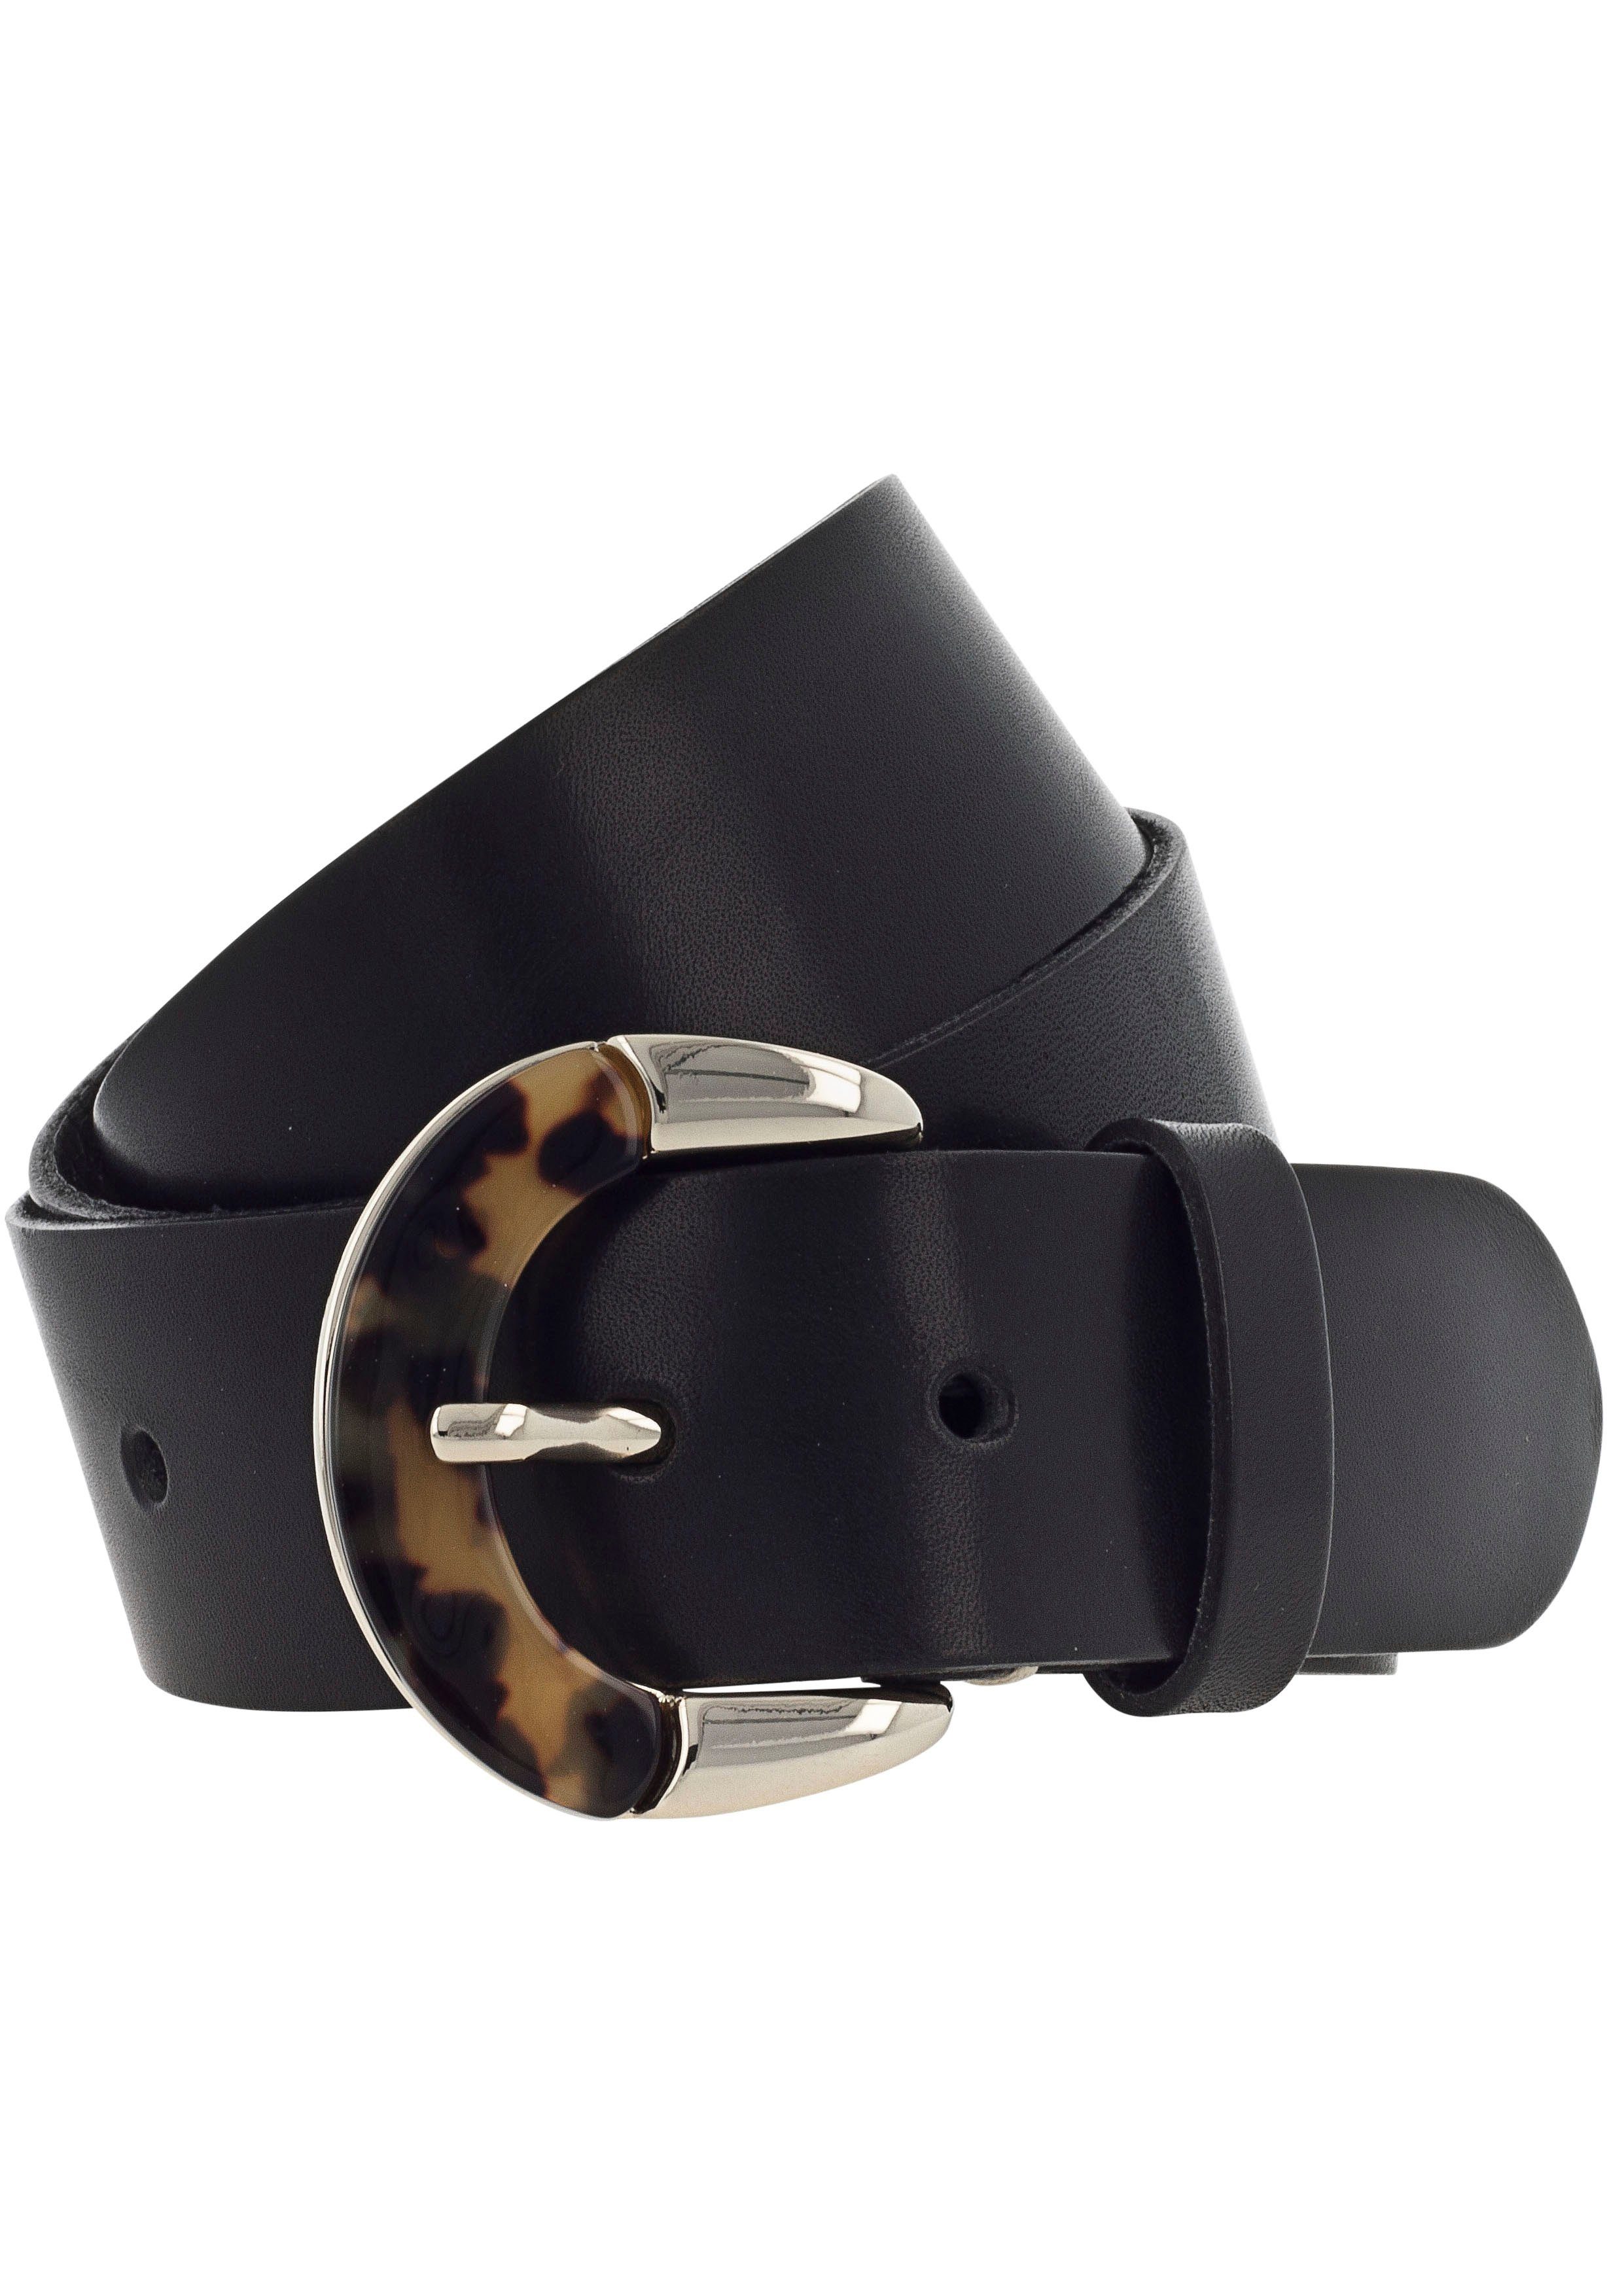 b.belt Ledergürtel Schließe Animal-Design schwarz mit